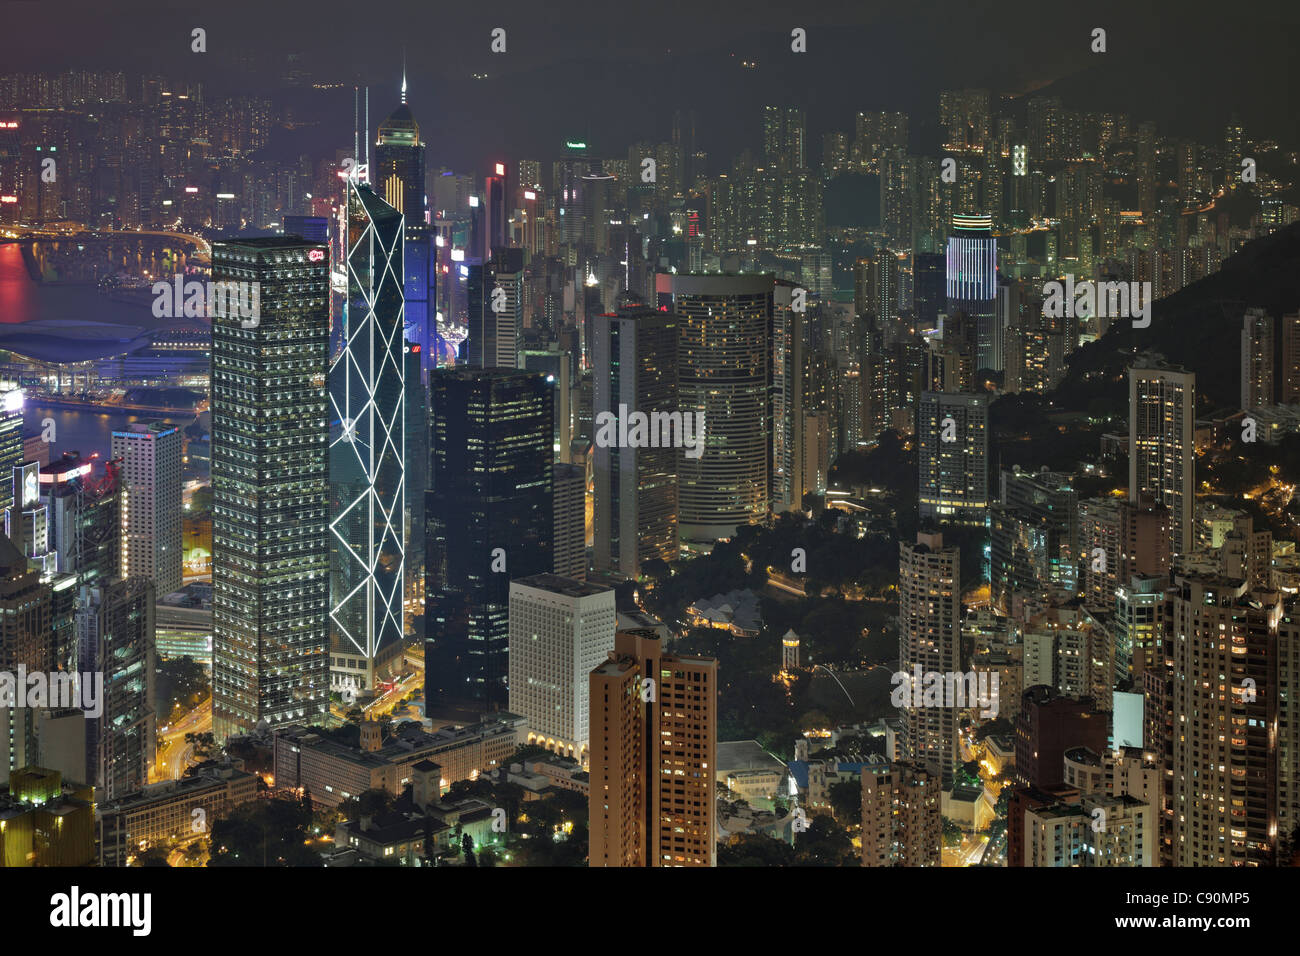 View of Hong Kong from Victoria Peak towards the illuminated skyscrapers at night, Hong Kong, China Stock Photo